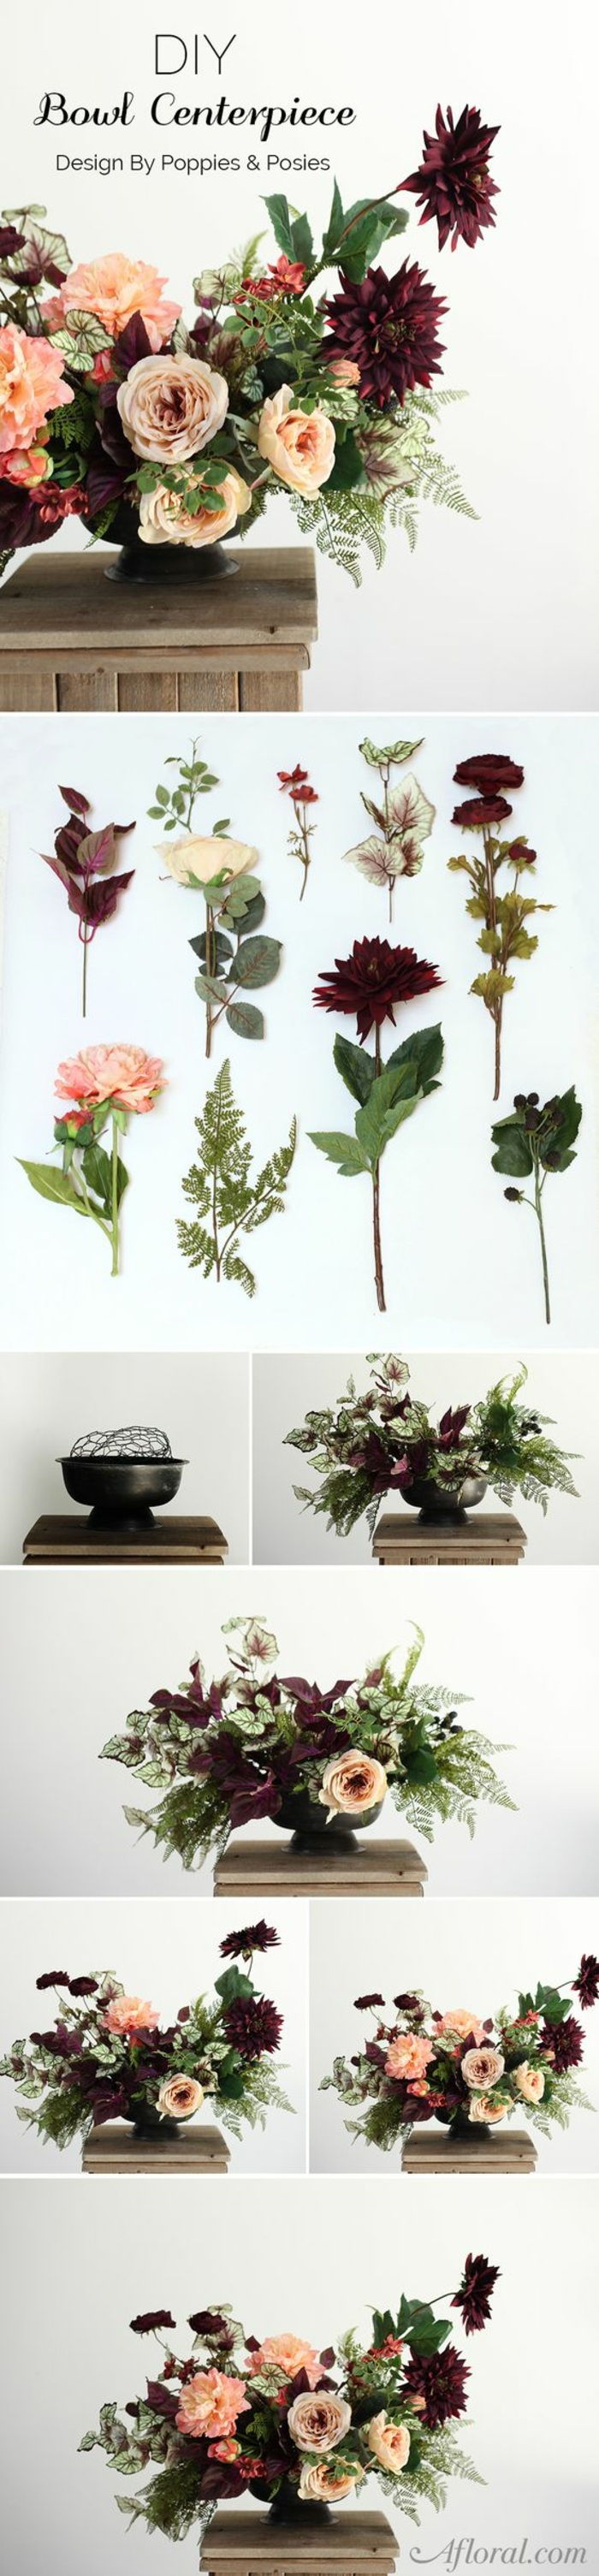 slávnostné dekorácie stolov, usporiadanie kvetov, huby, vázy, dekorácie stolov